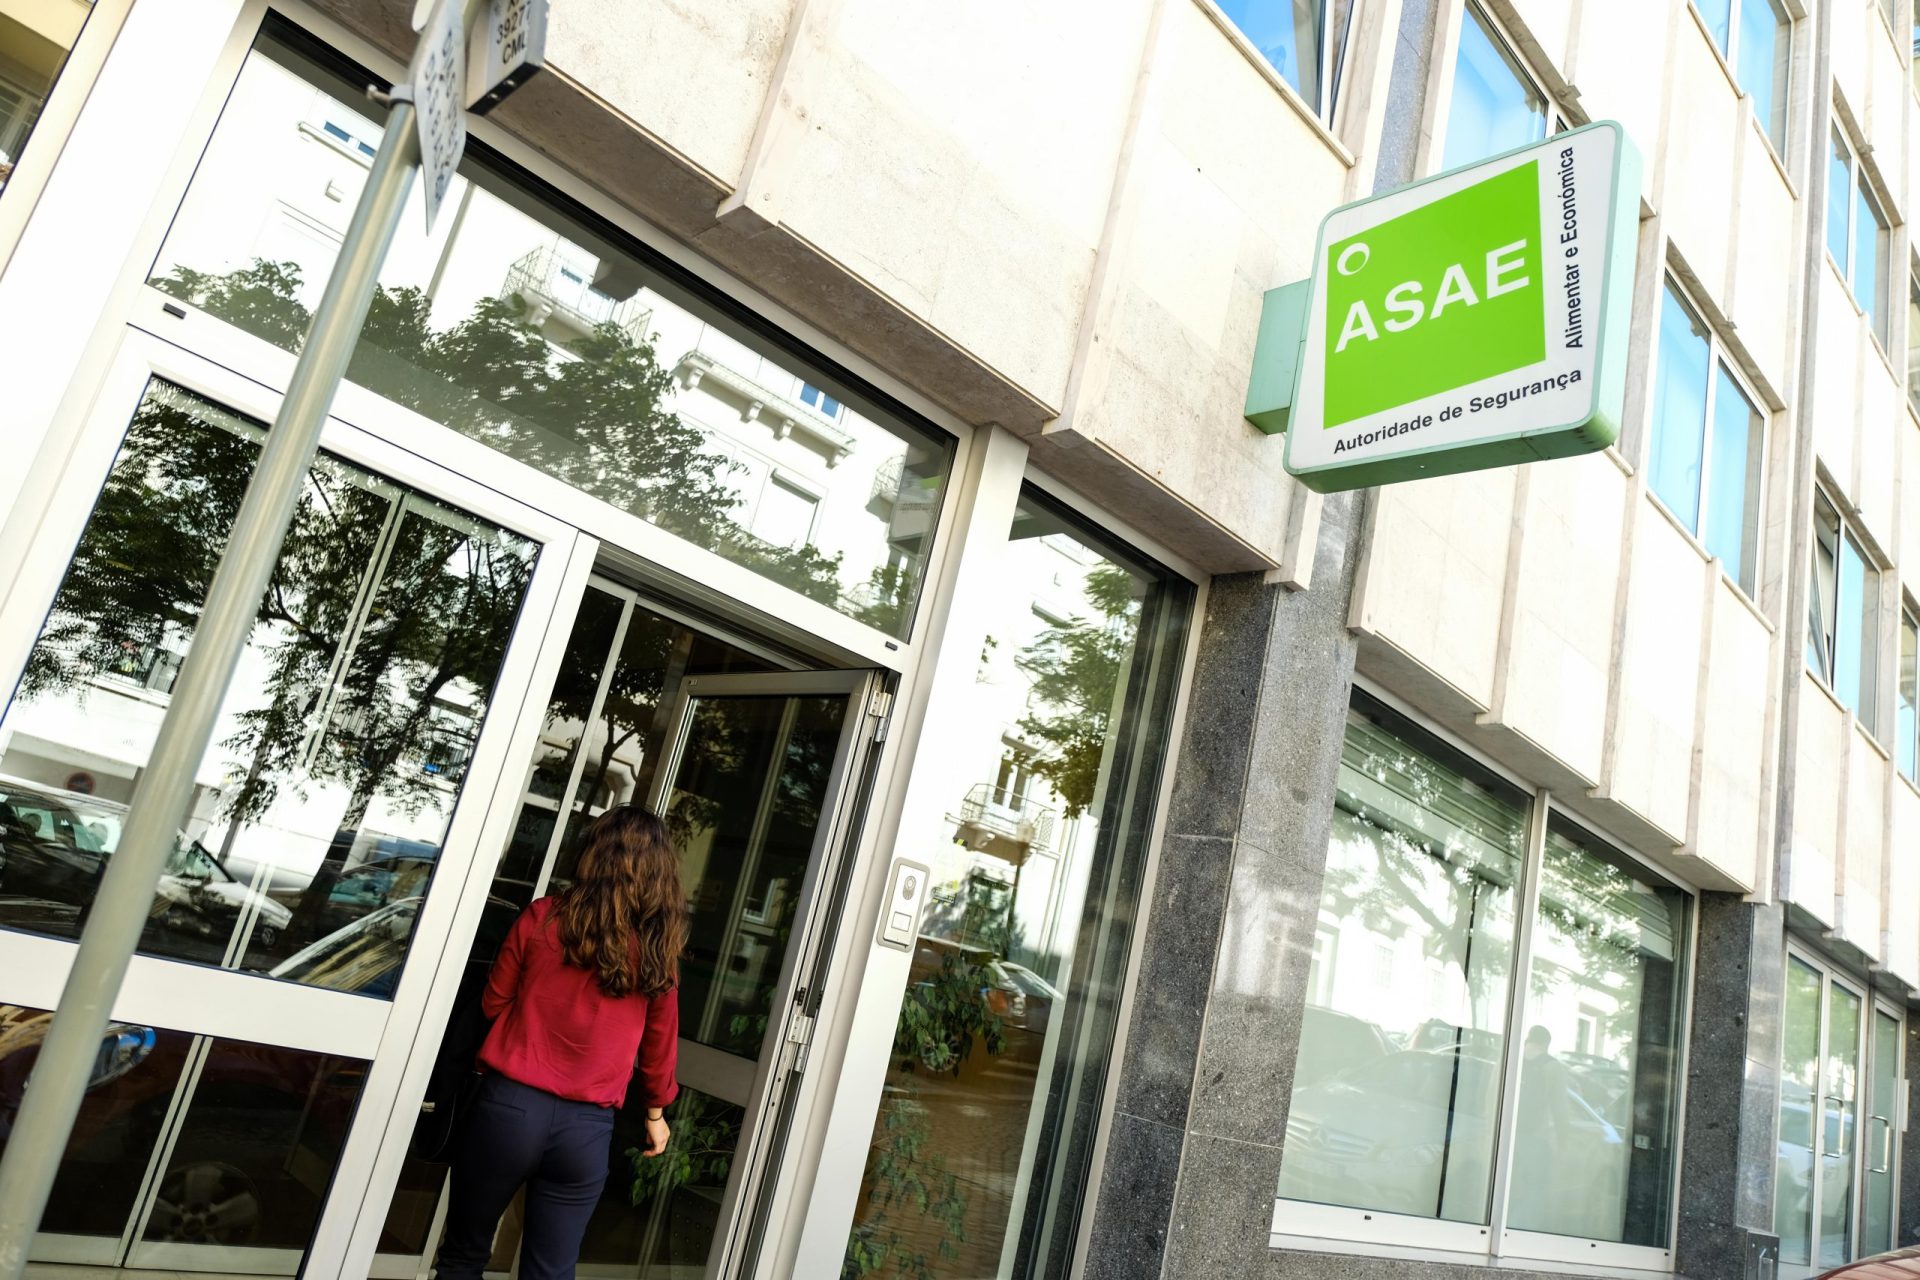  ASAE suspende atividade de cinco lojas